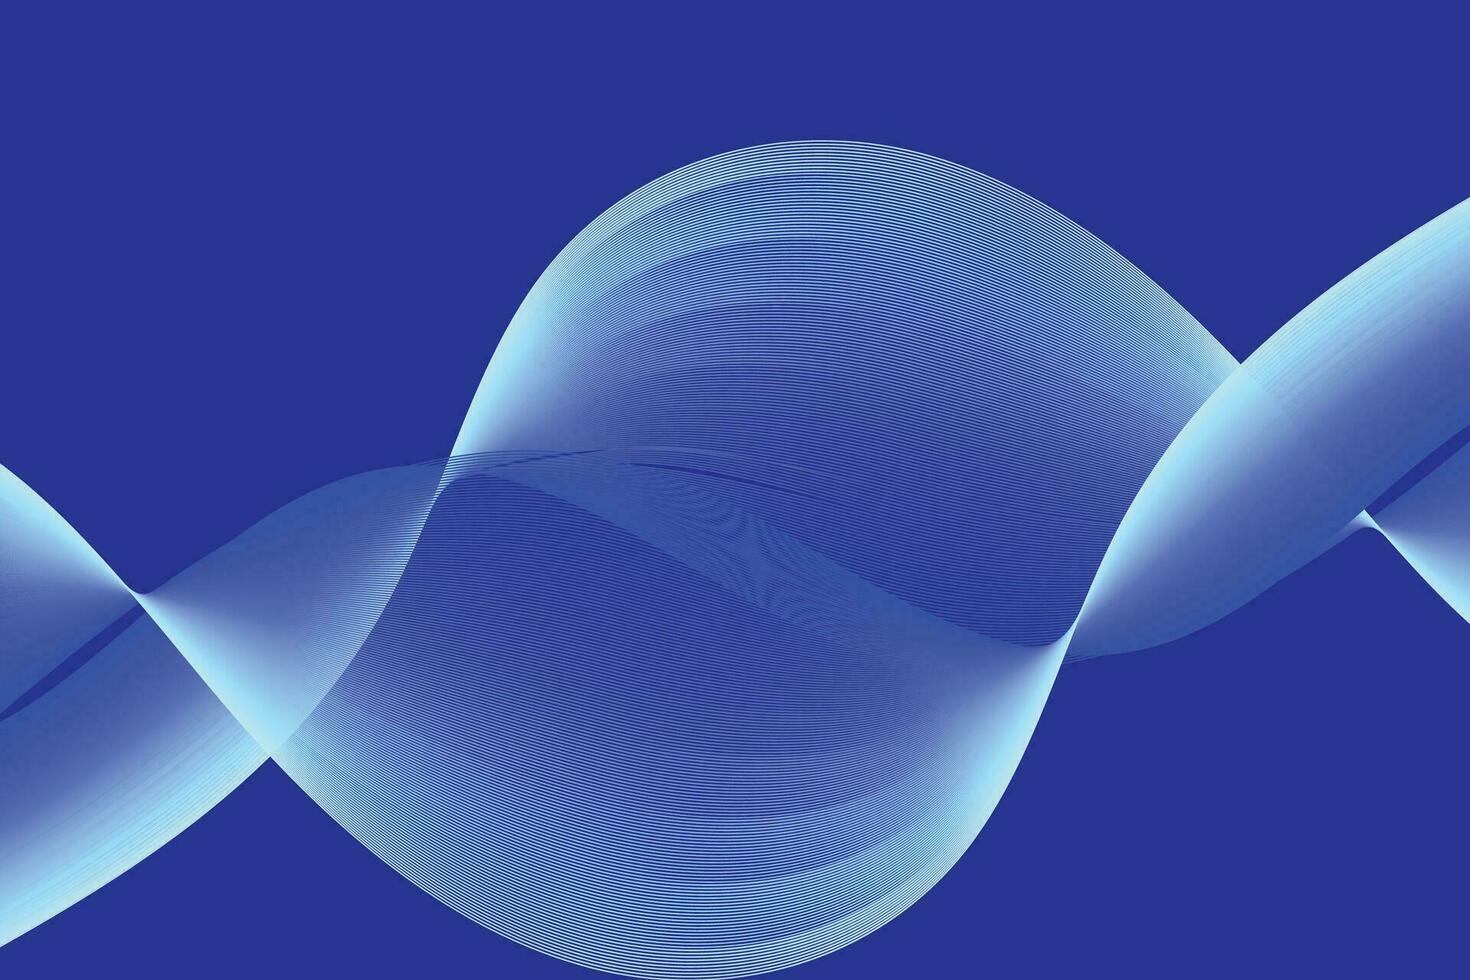 resumen fondo, elegante azul ola remolinos antecedentes vector